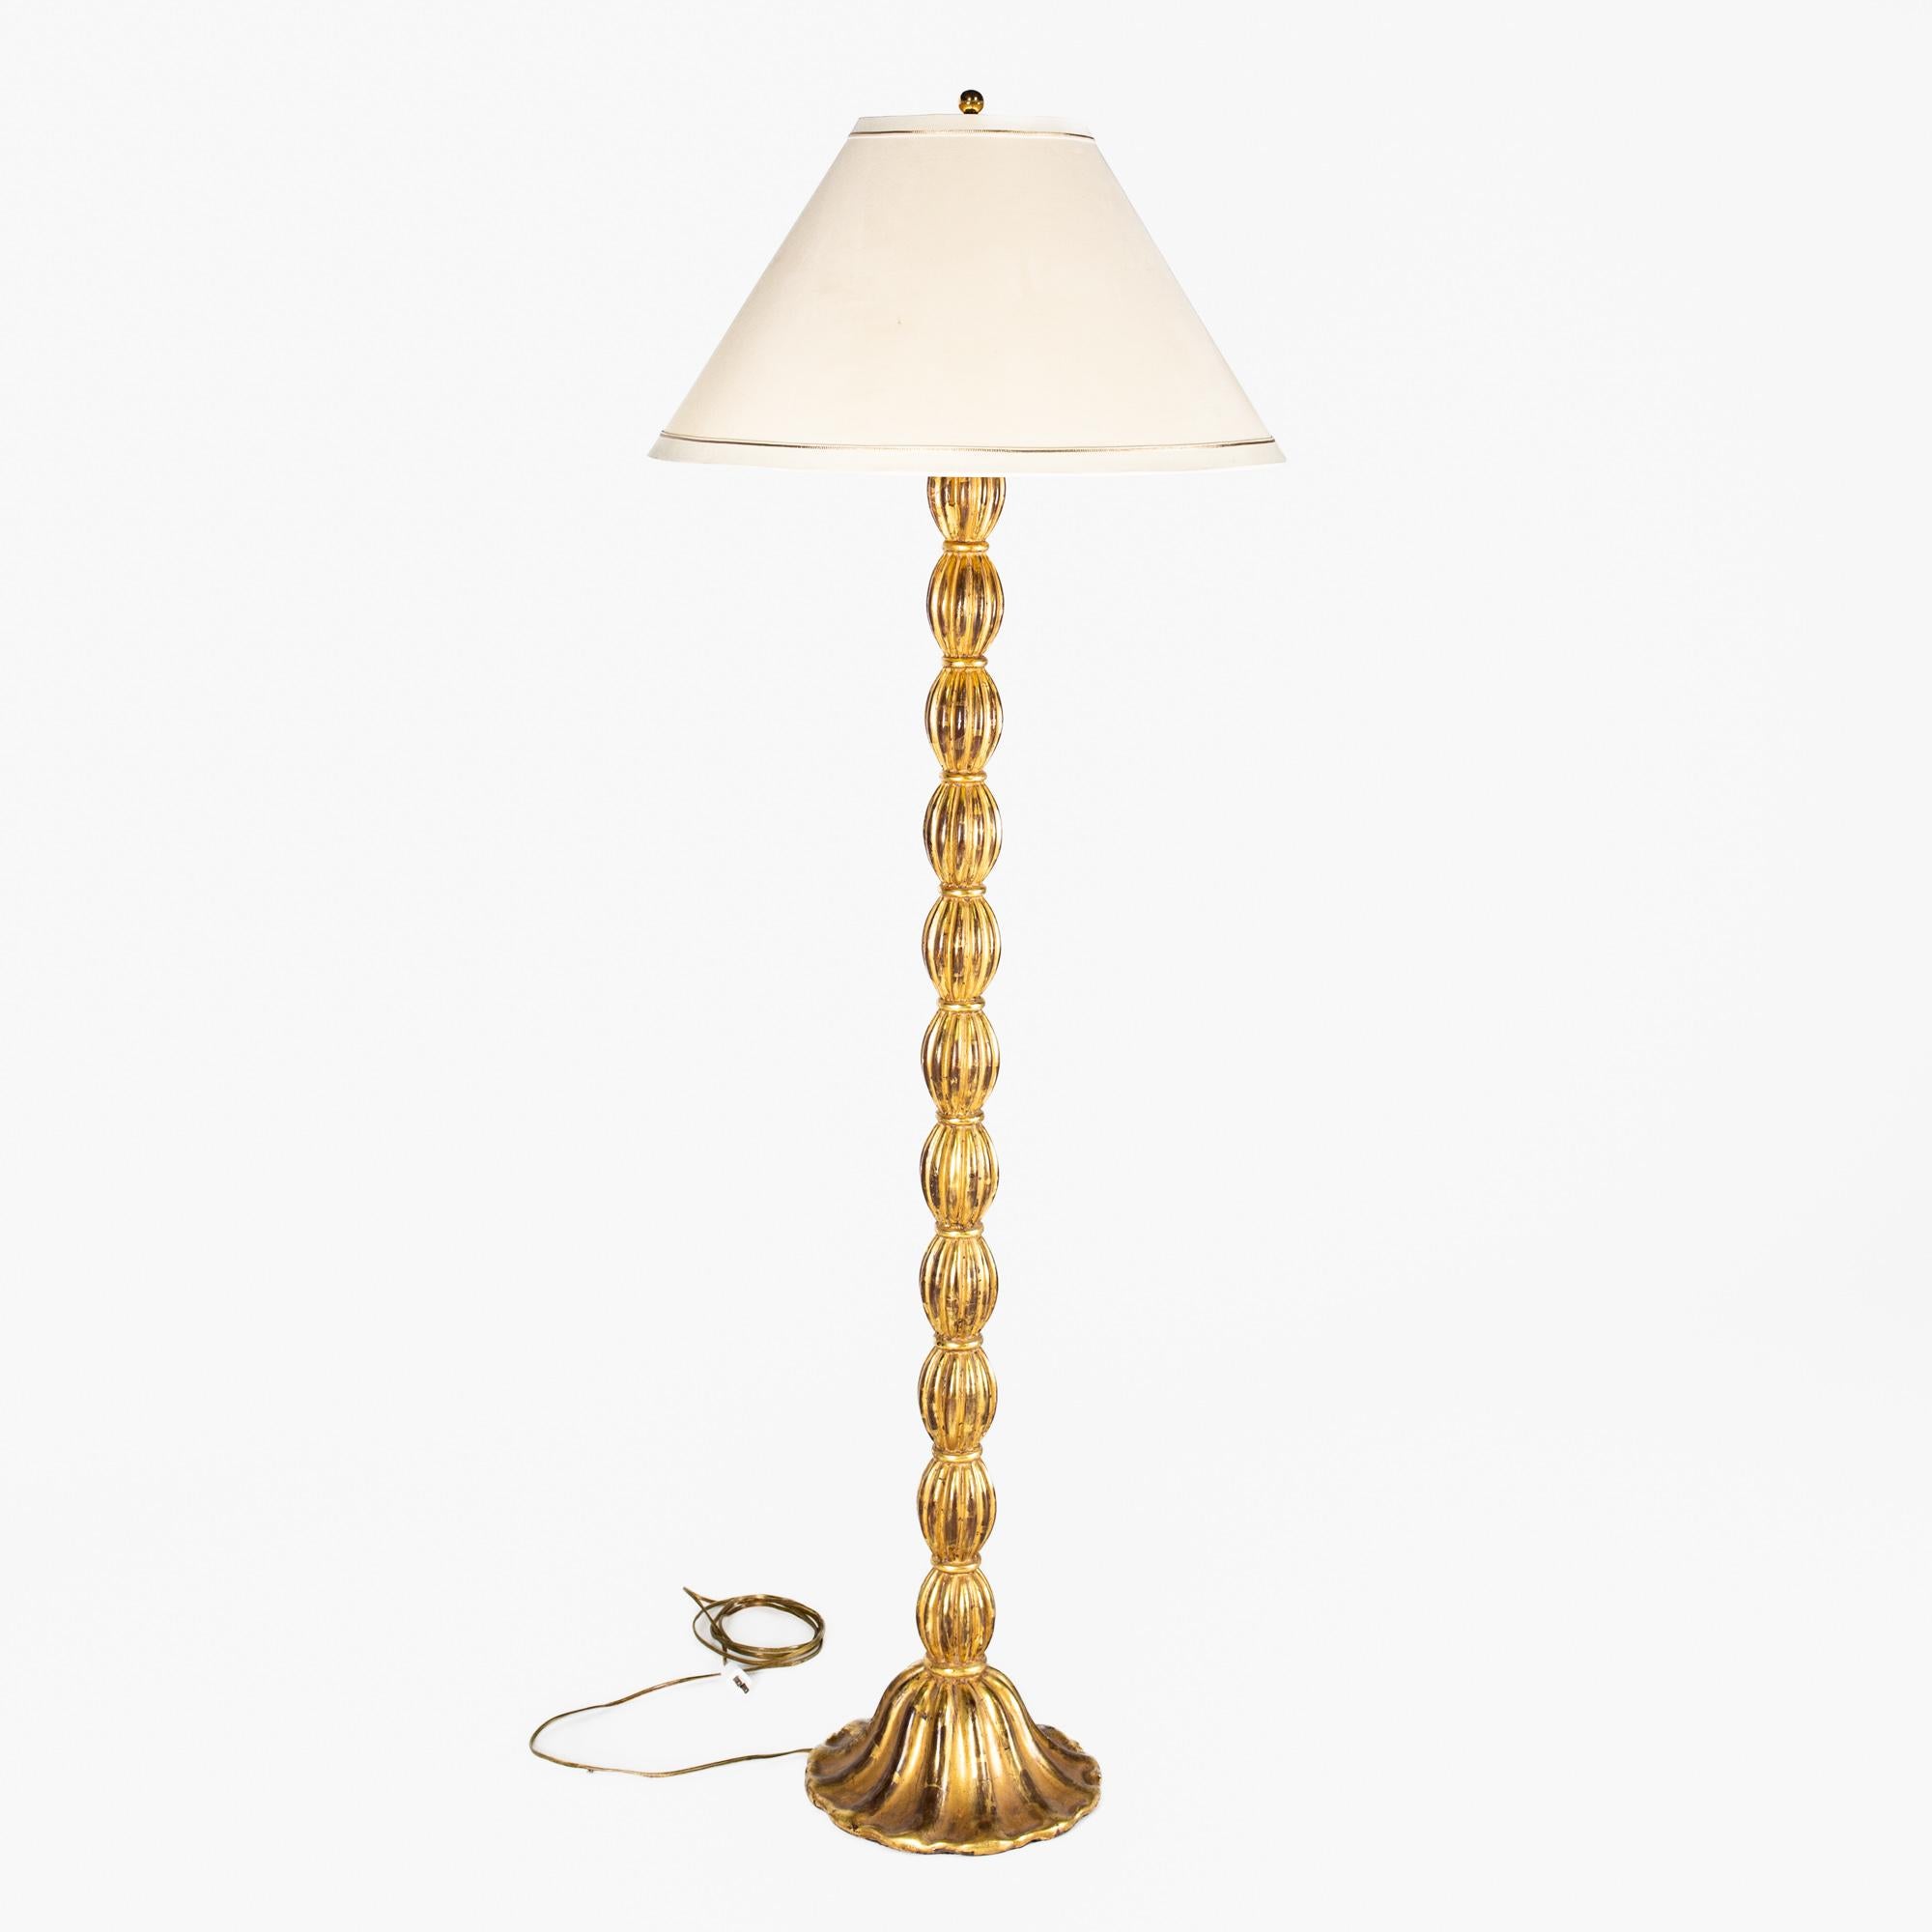 Antike goldfarbene Stehlampe.

Diese Lampe misst: 23 breit x 23 tief x 63 Zoll hoch.

Diese Lampe ist in einem tollen Vintage-Zustand mit einem verwitterten Aussehen, kleinen Flecken, Dellen und Verschleiß.

Über Fotos: Wir machen unsere Fotos